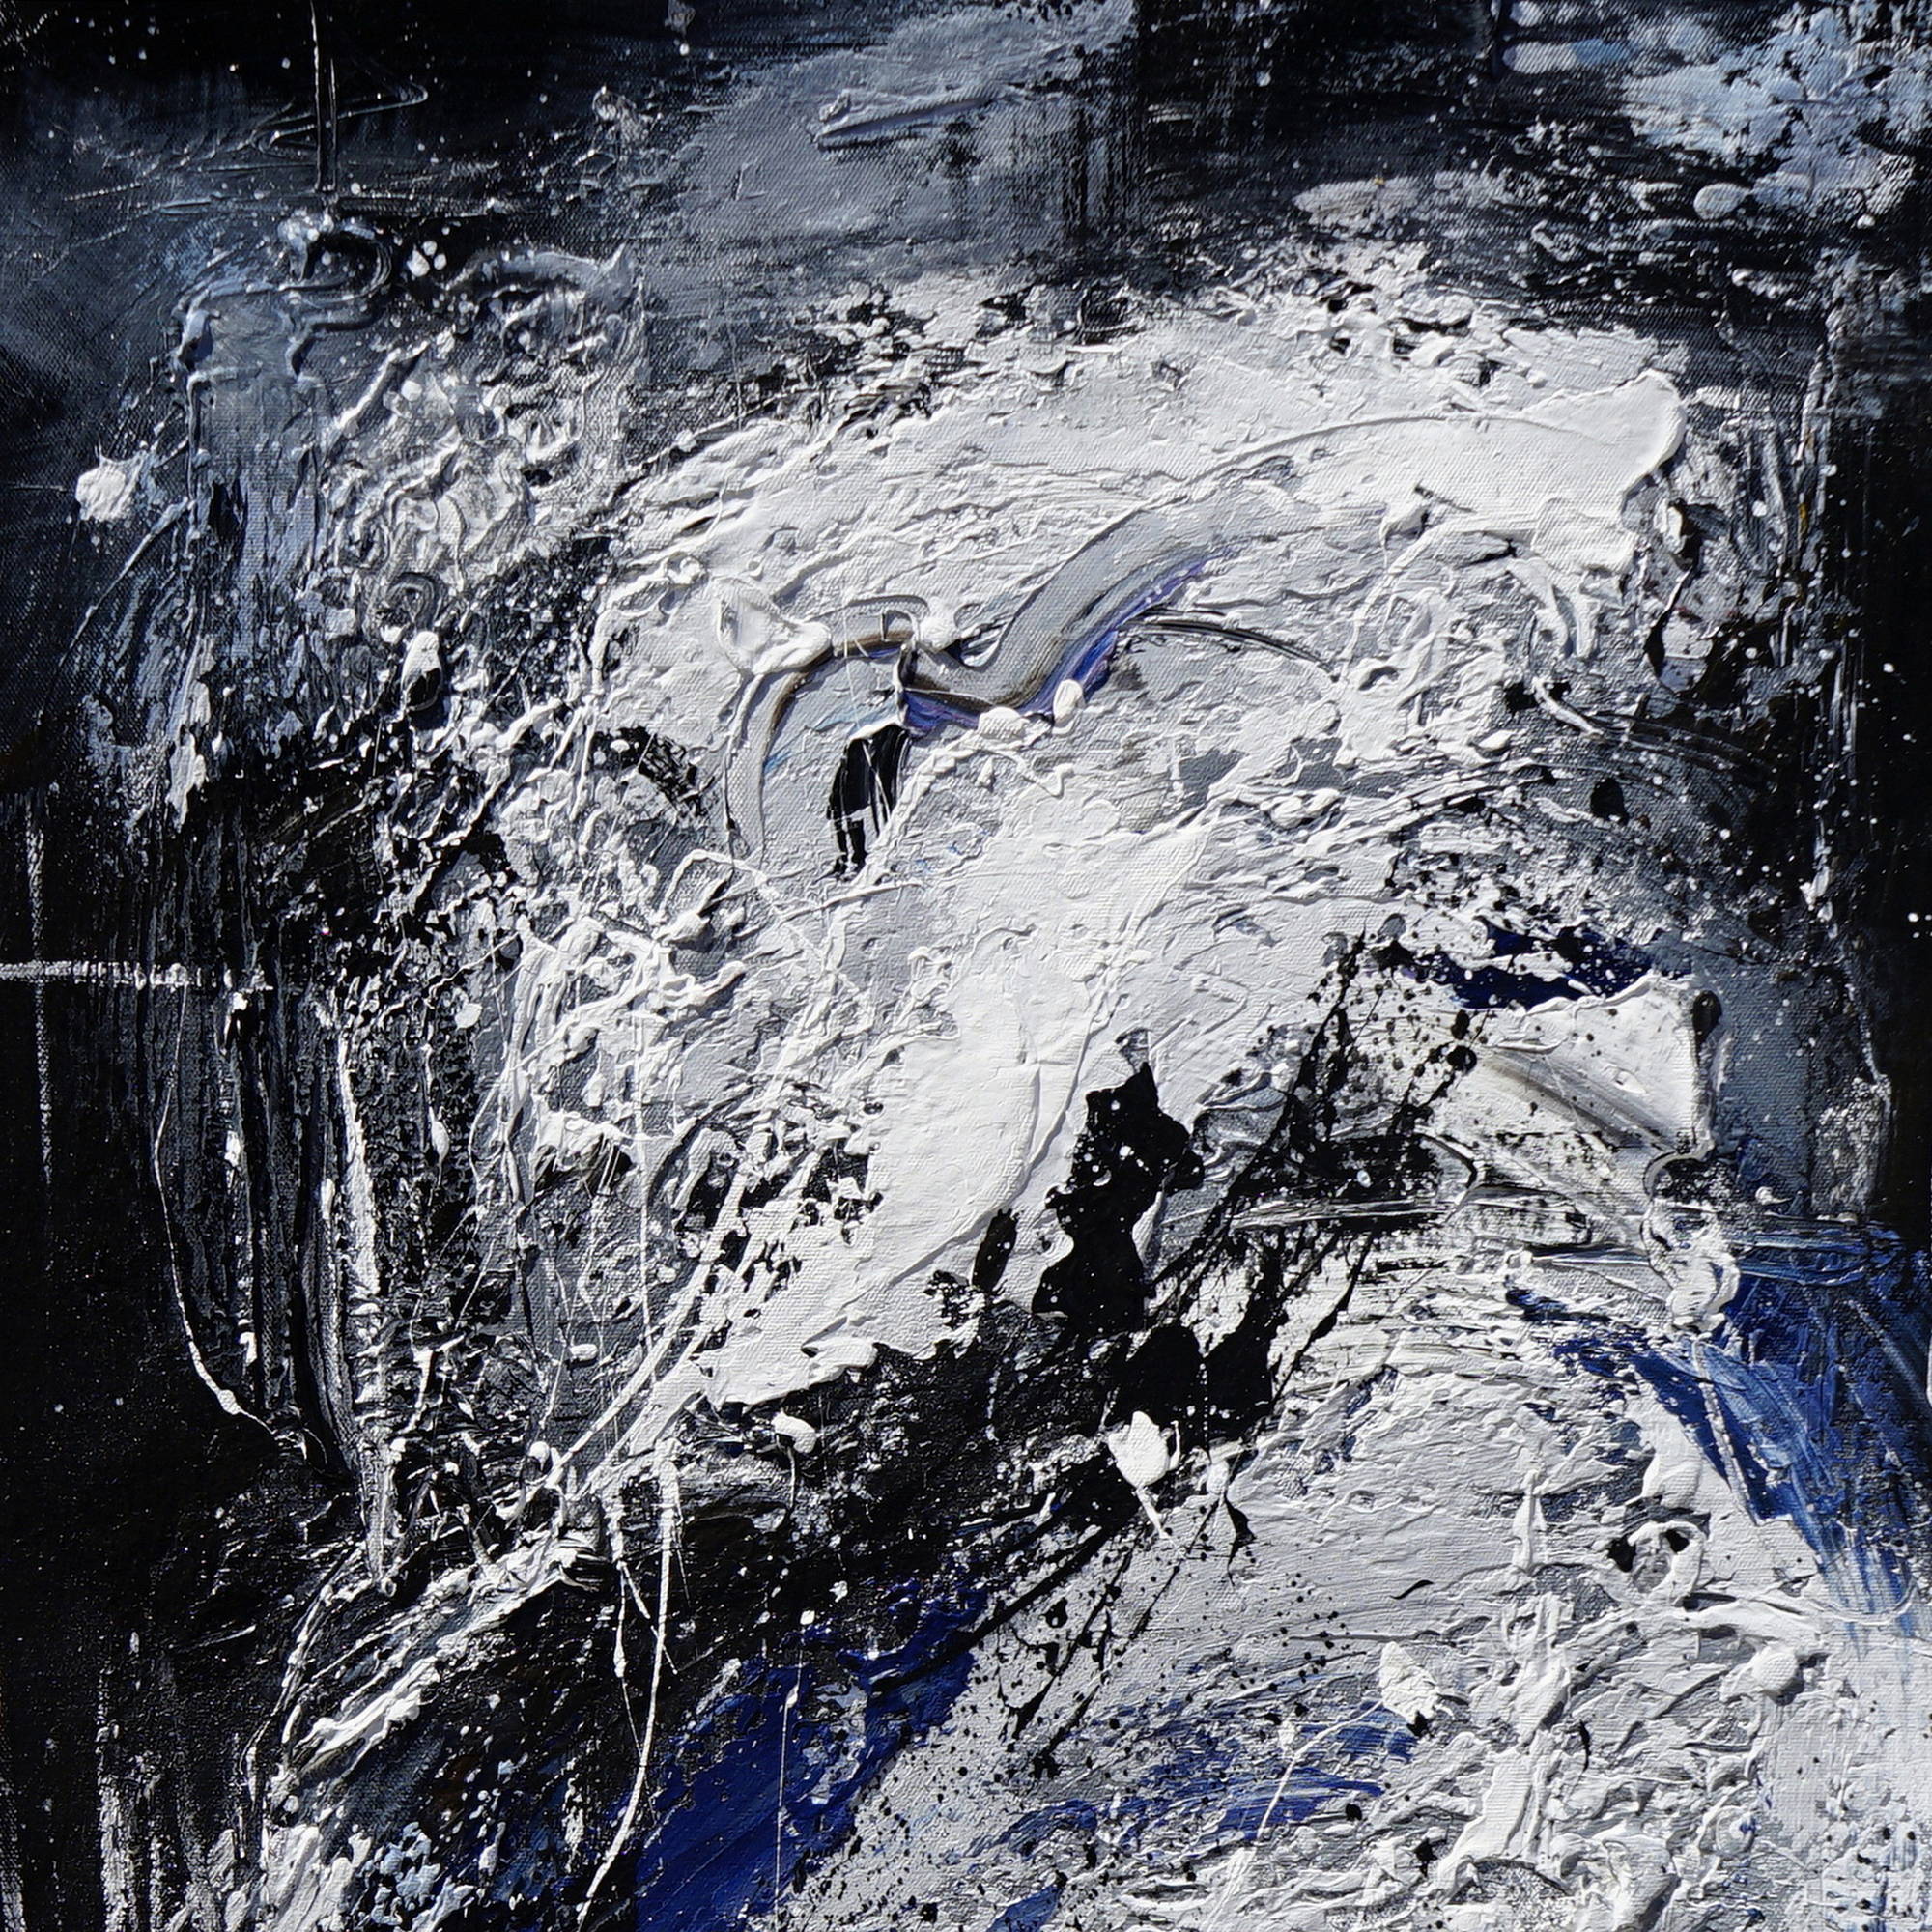 Abstrait peint à la main en bleu et blanc 80x120cm